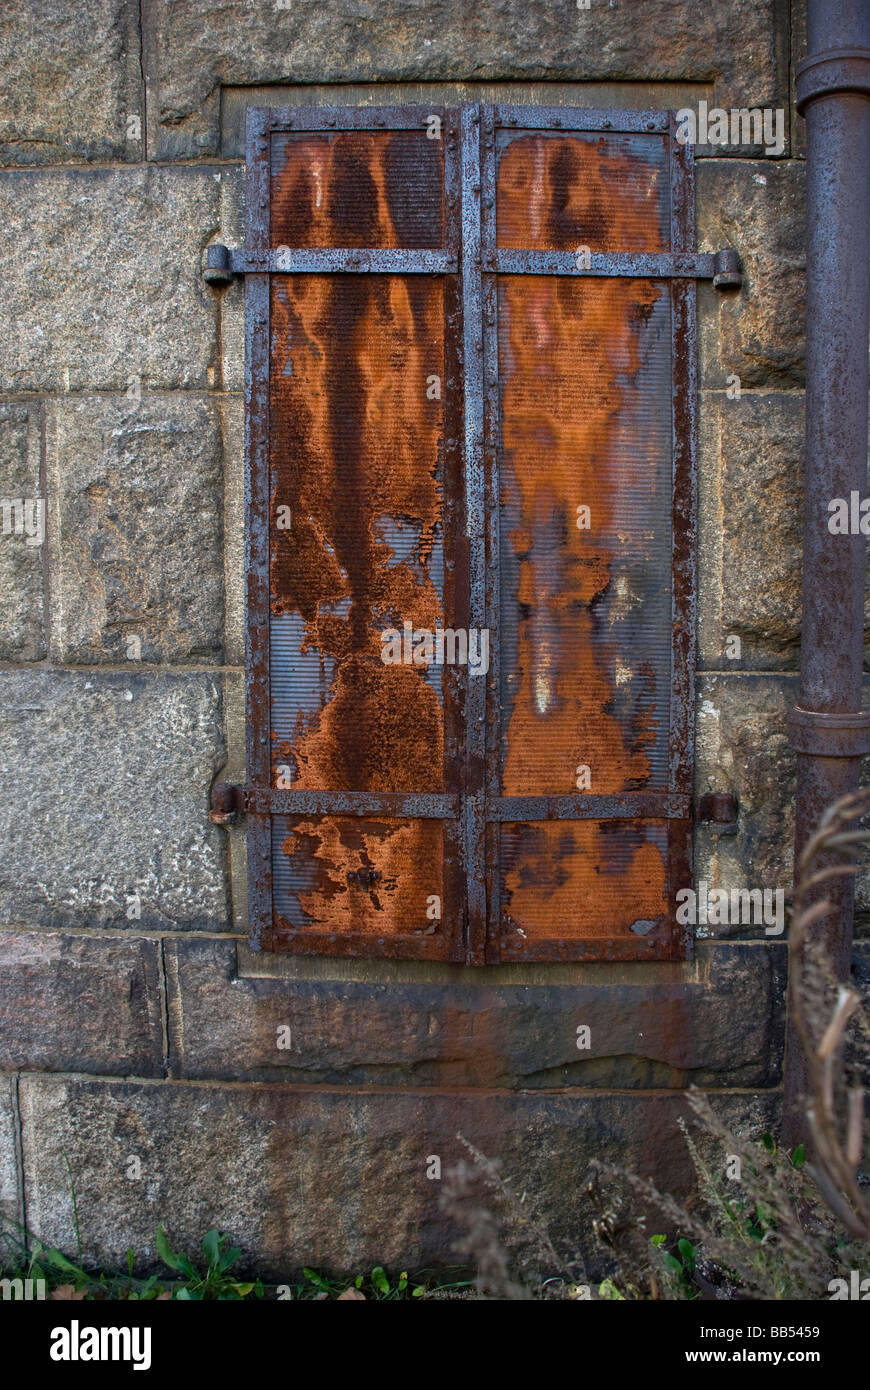 El óxido de hierro oxidado persianas muro de piedra vieja ruina antiguo edificio antiguo vertical Foto de stock